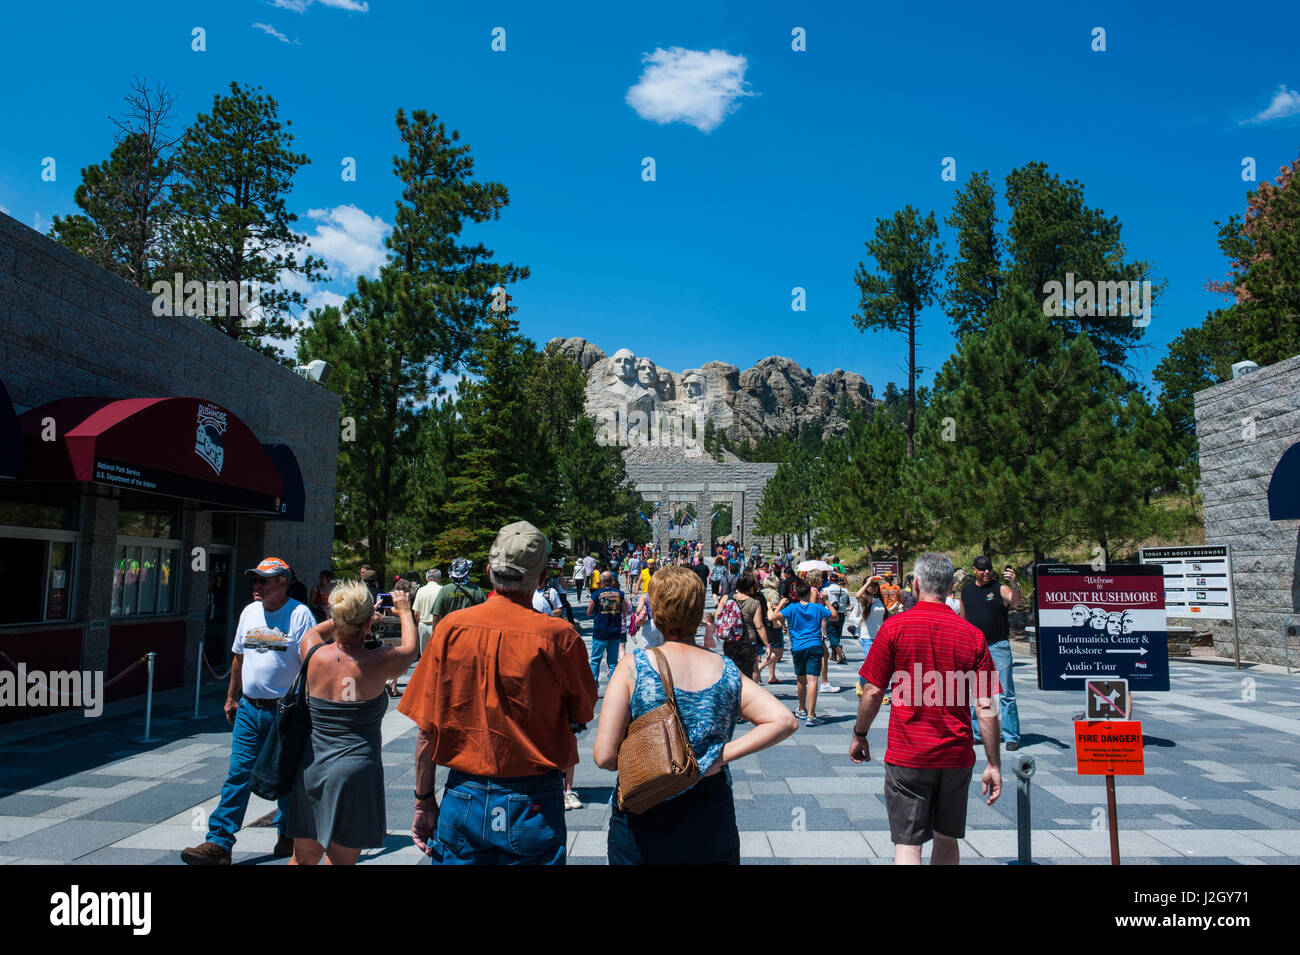 Tourists on their way to Mount Rushmore, South Dakota, USA Stock Photo